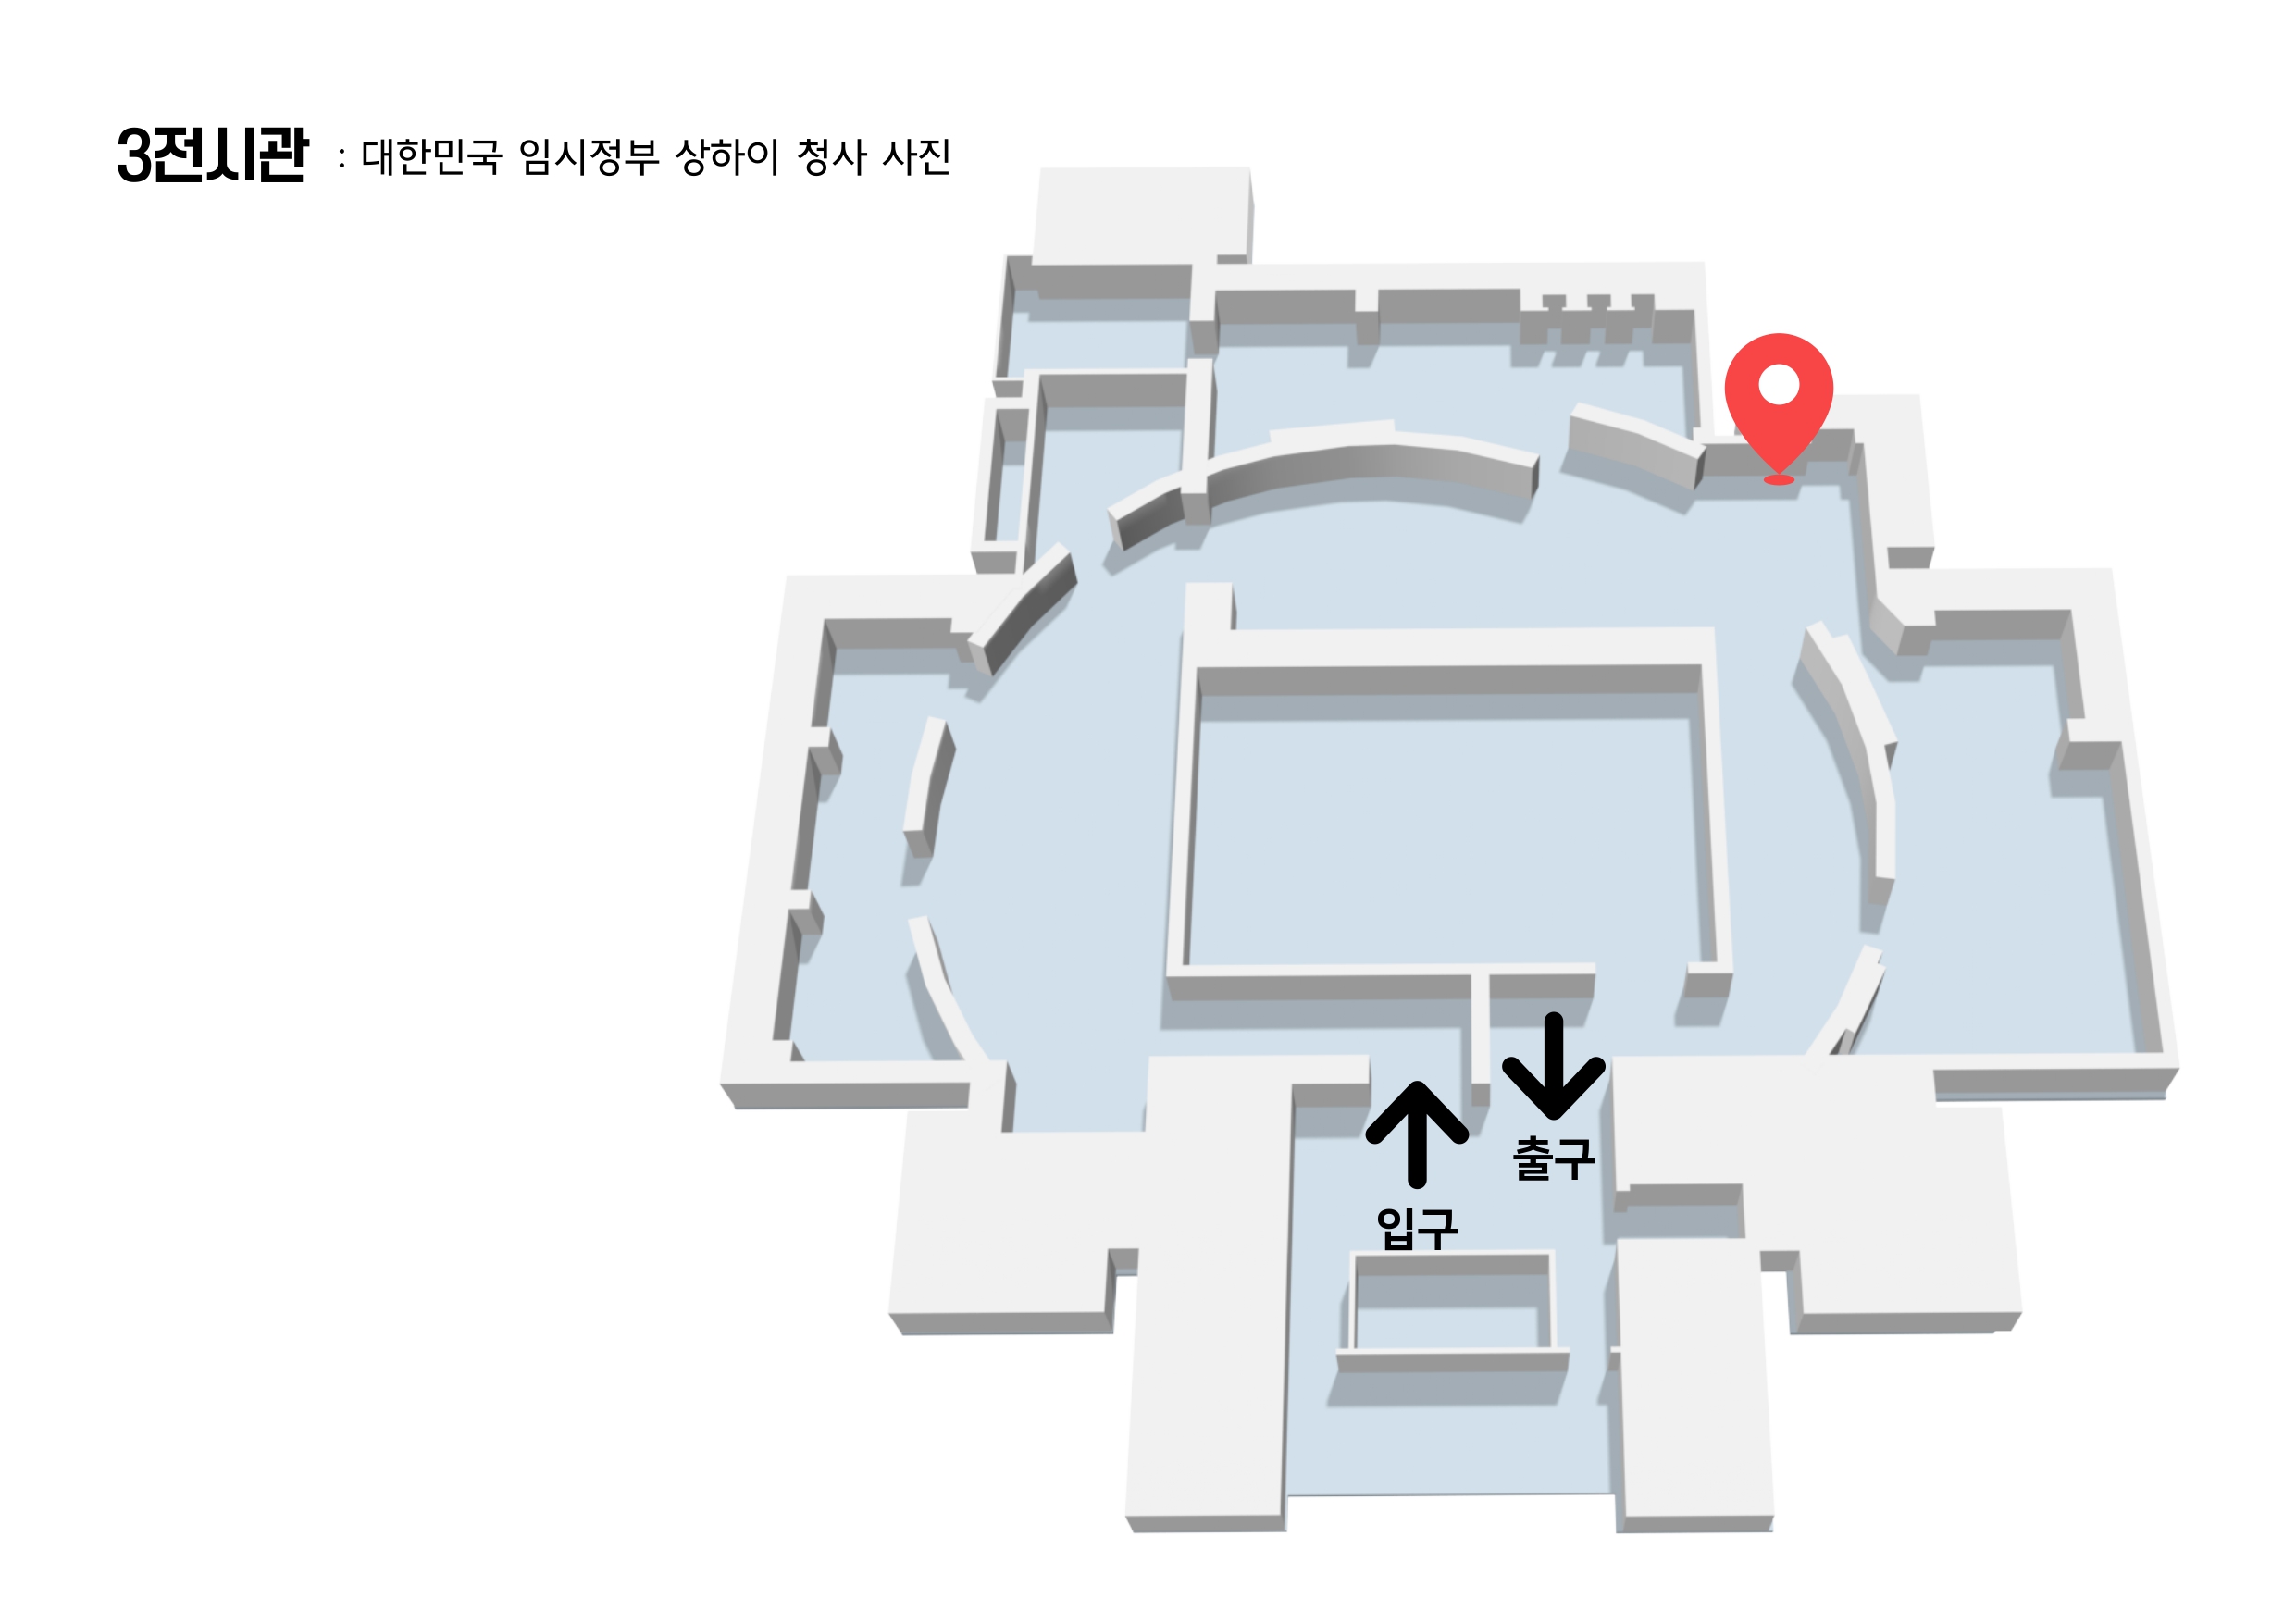 3전시관 대한민국 임시정부 상하이 청사 사진 전시물 위치